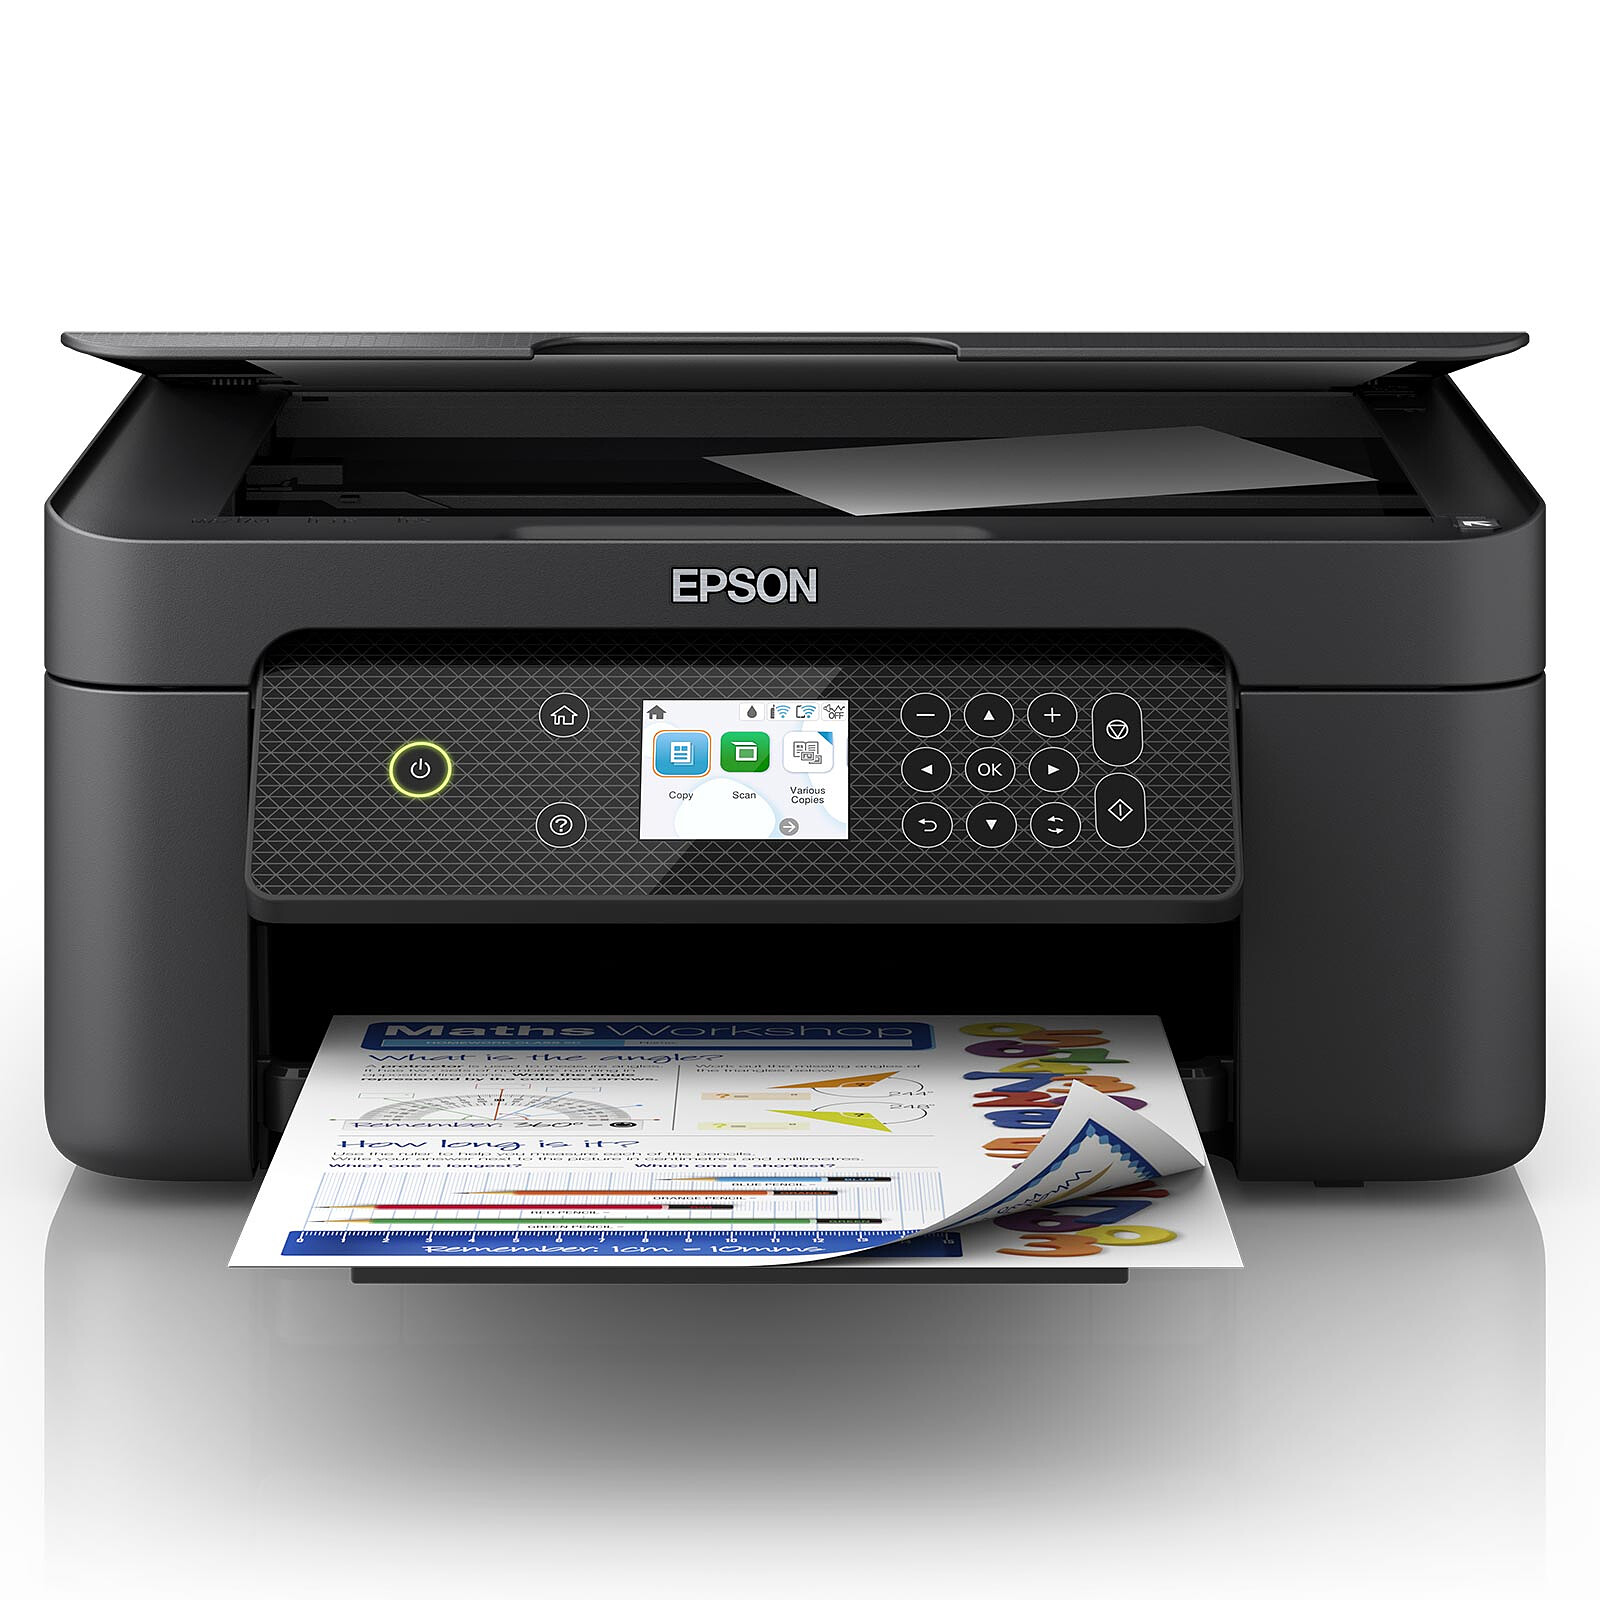 Opiniones - Epson Expression Home XP-2200 Impresora Multifunción Color WiFi